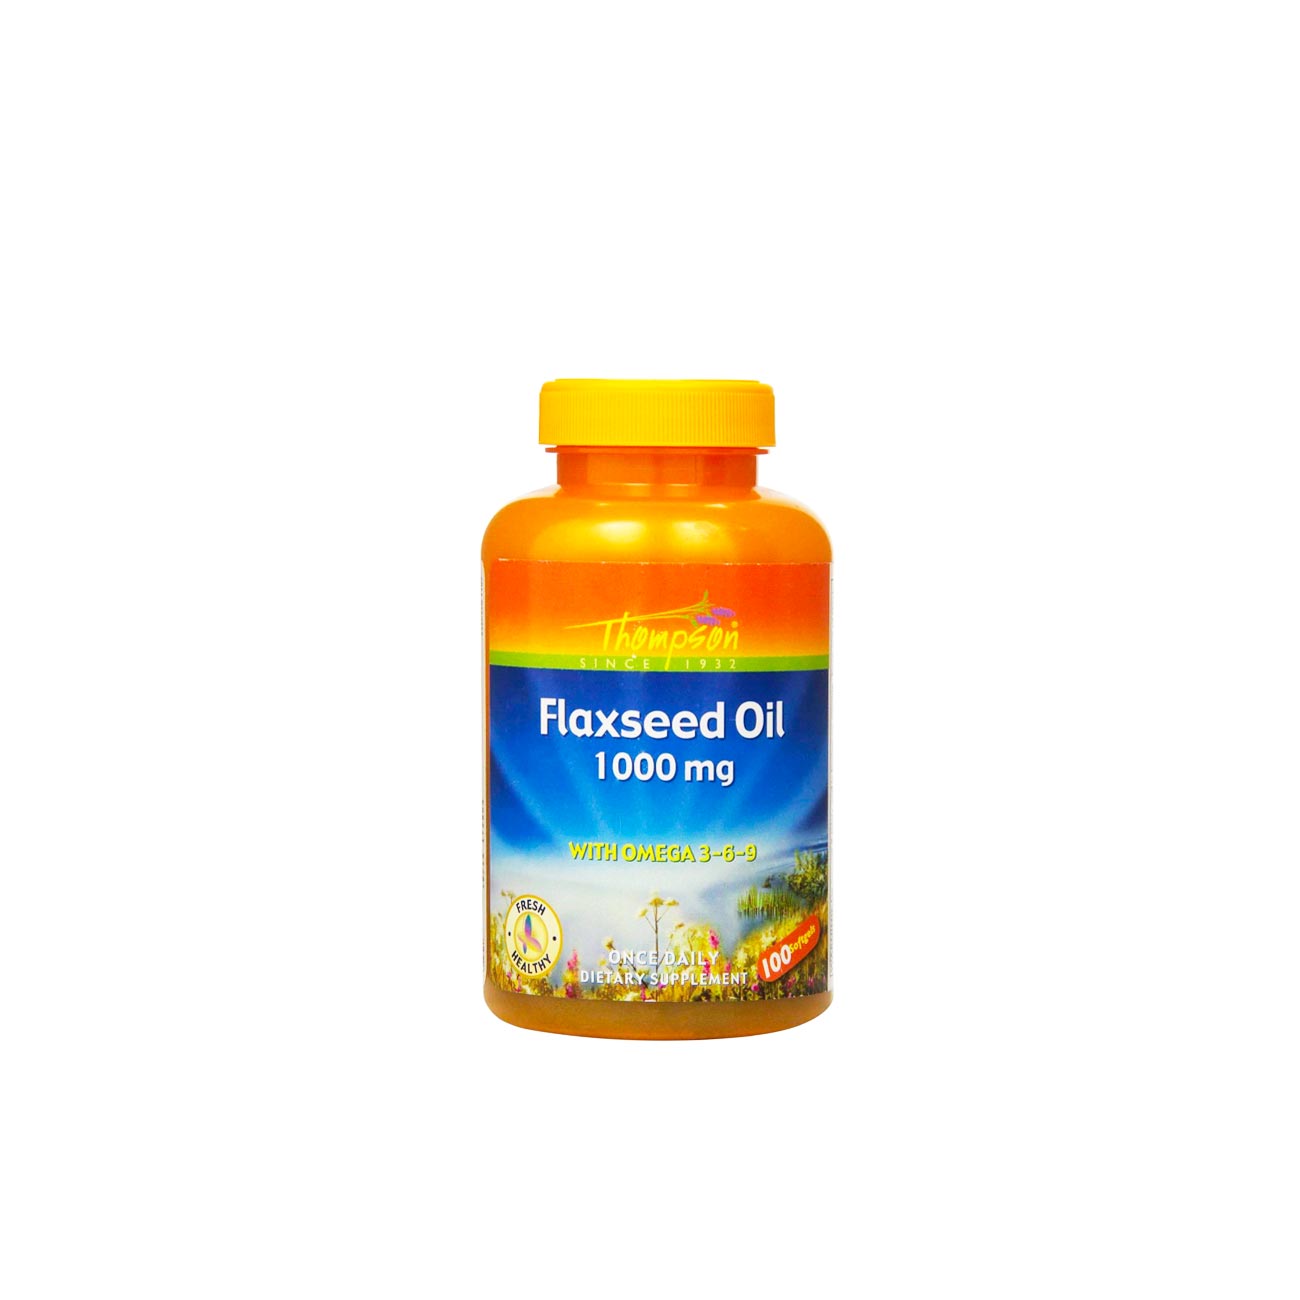 Flaxseed oil 1000mg